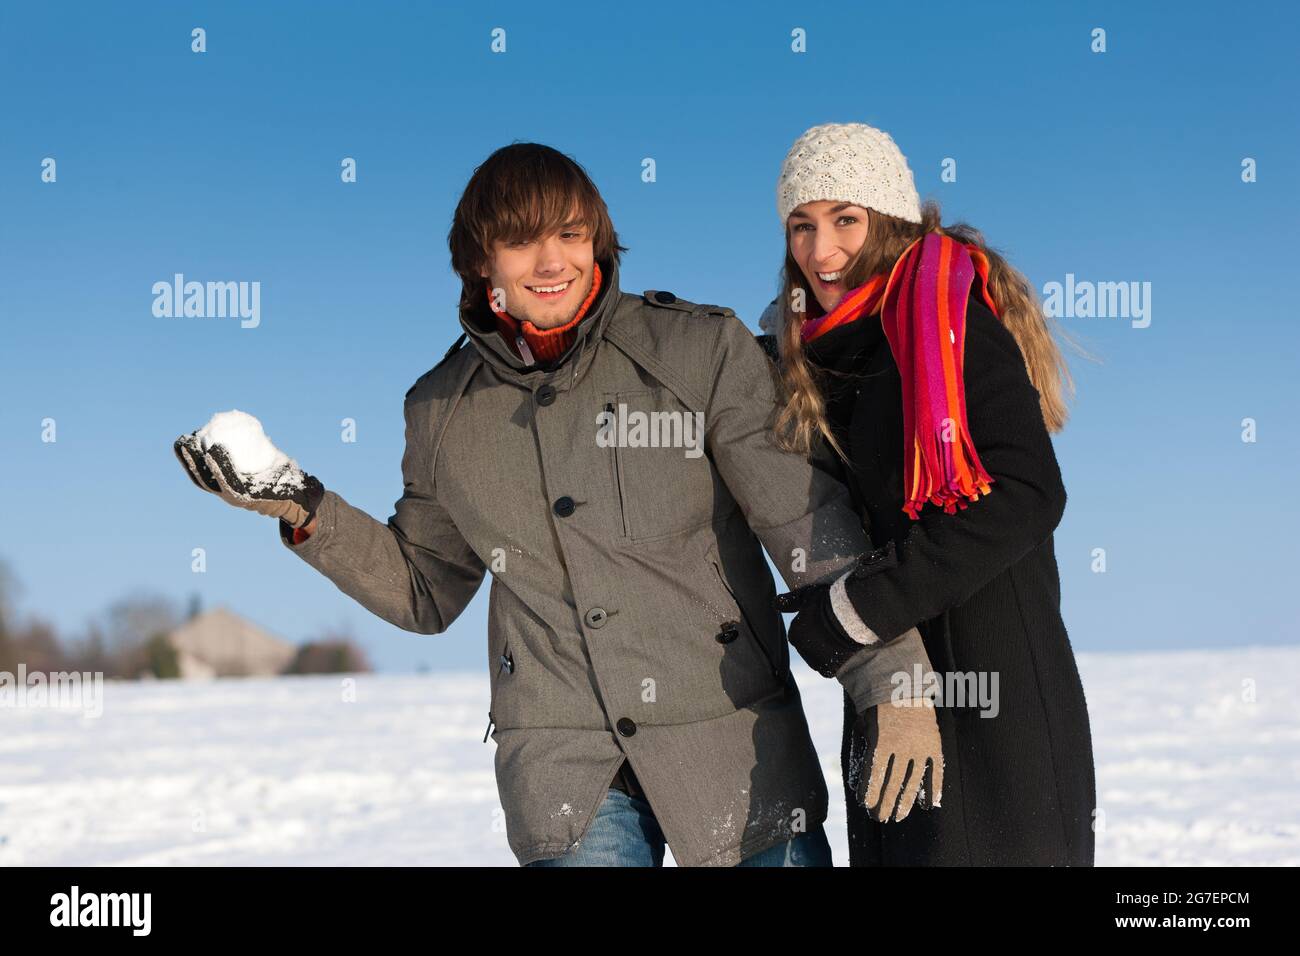 Coppia - uomo e donna - facendo una passeggiata invernale e gettando la neve Foto Stock